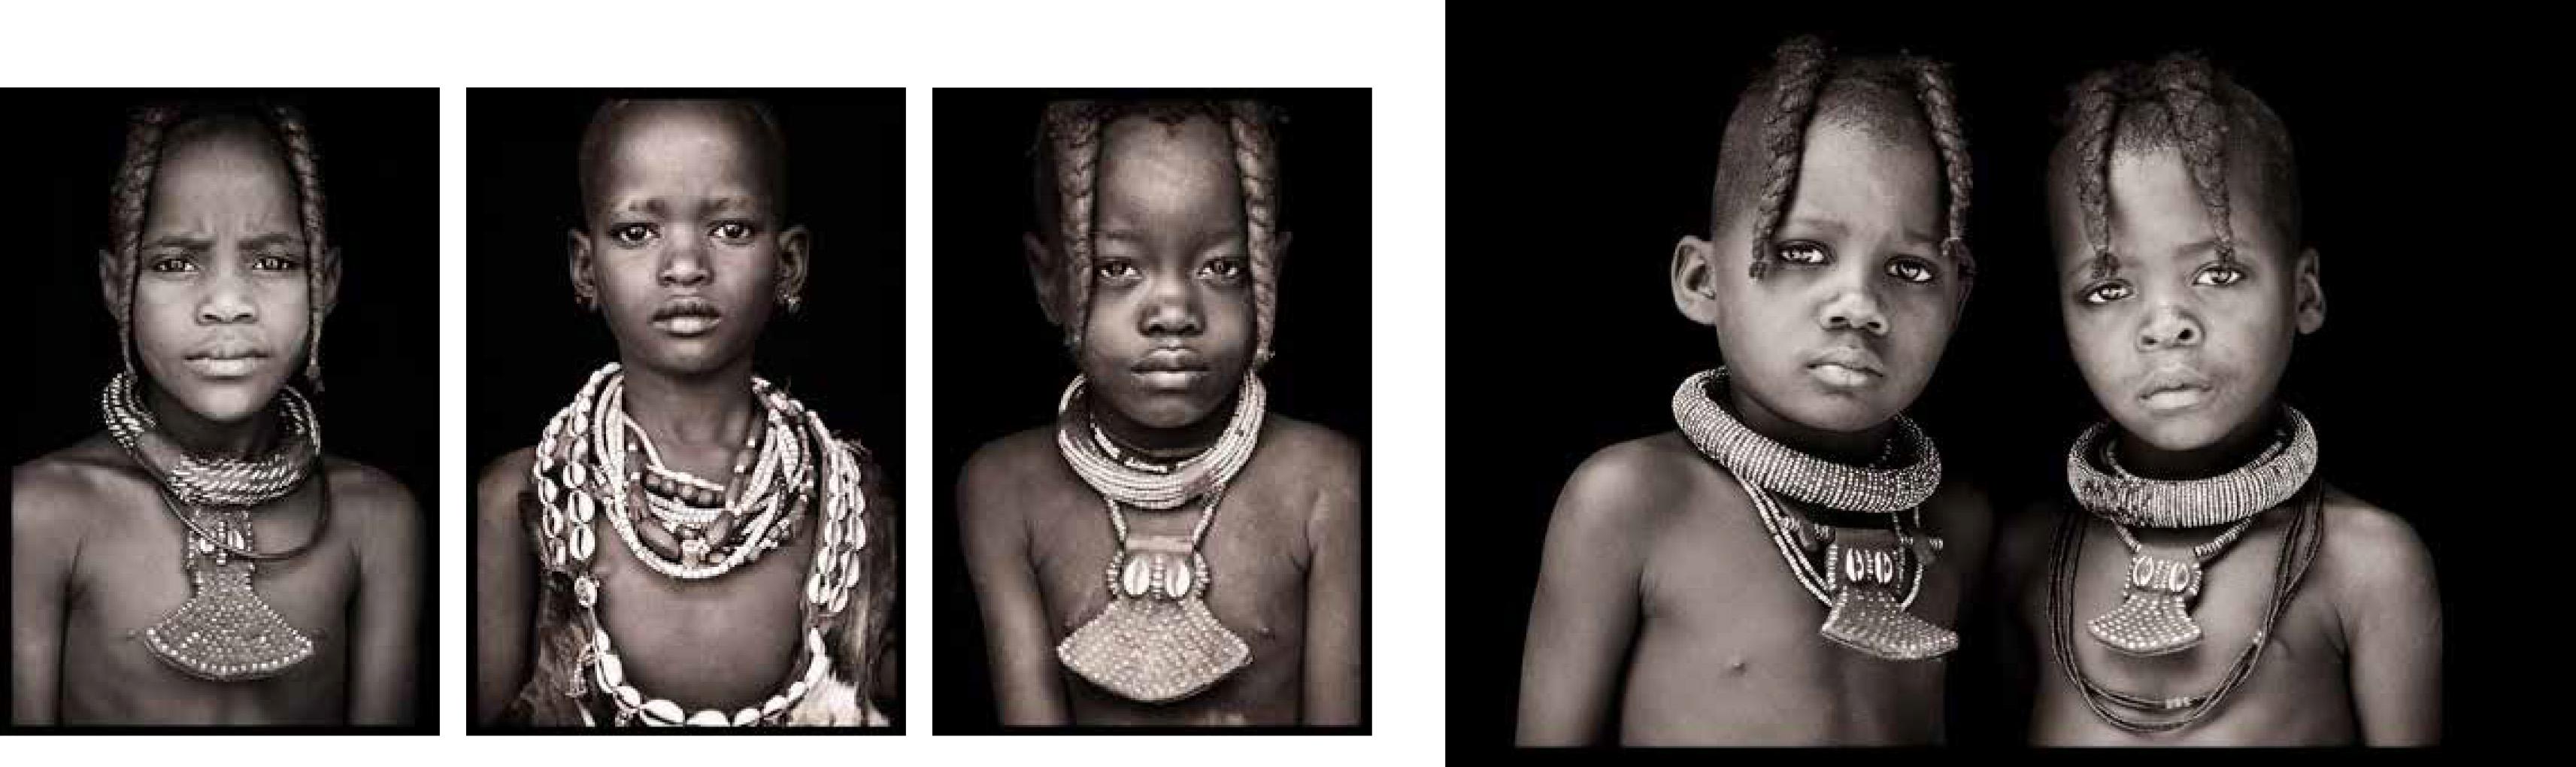 Vier Stücke über die Jugend in Afrika.

3 Stück 90 x 60cm mit Acrylfrontplatte
1 Stück 135 x 90cm nur Druck, mit 5 cm weißem Rand rundum